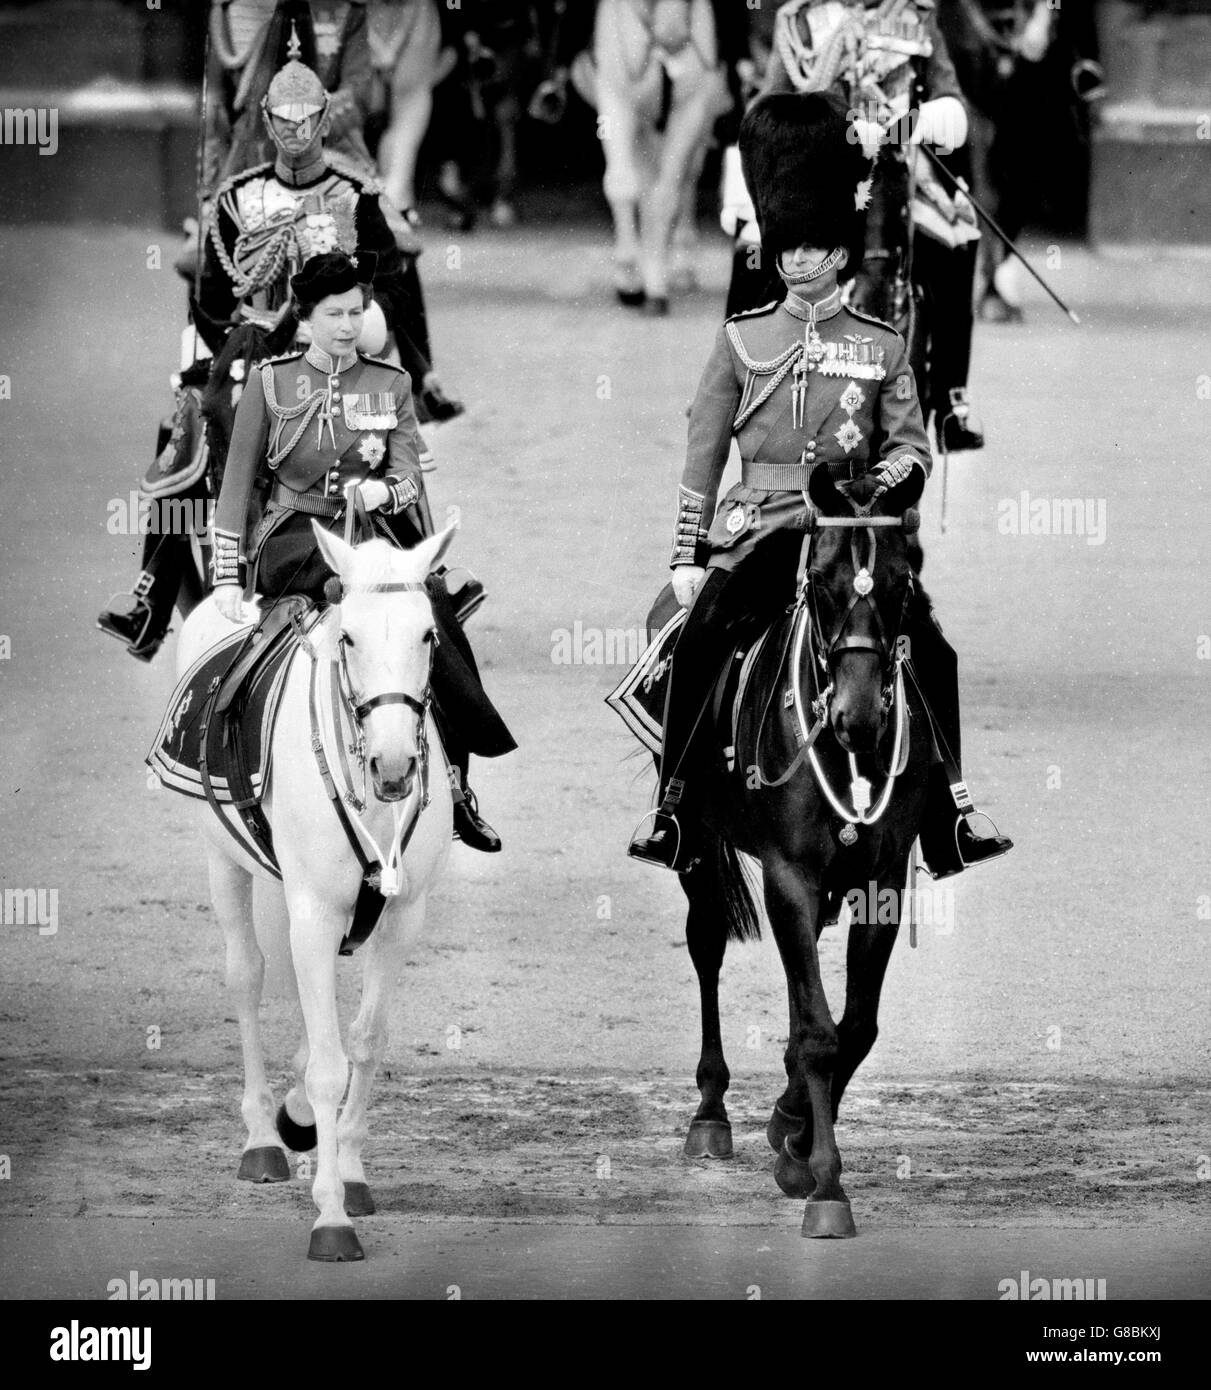 La reine Elizabeth II et le prince Philip, duc d'Édimbourg quittant Buckingham Palace à cheval sur le chemin de la parade des gardes à cheval pour la cérémonie du Trooping de la couleur pour marquer l'anniversaire officiel de la reine. Banque D'Images